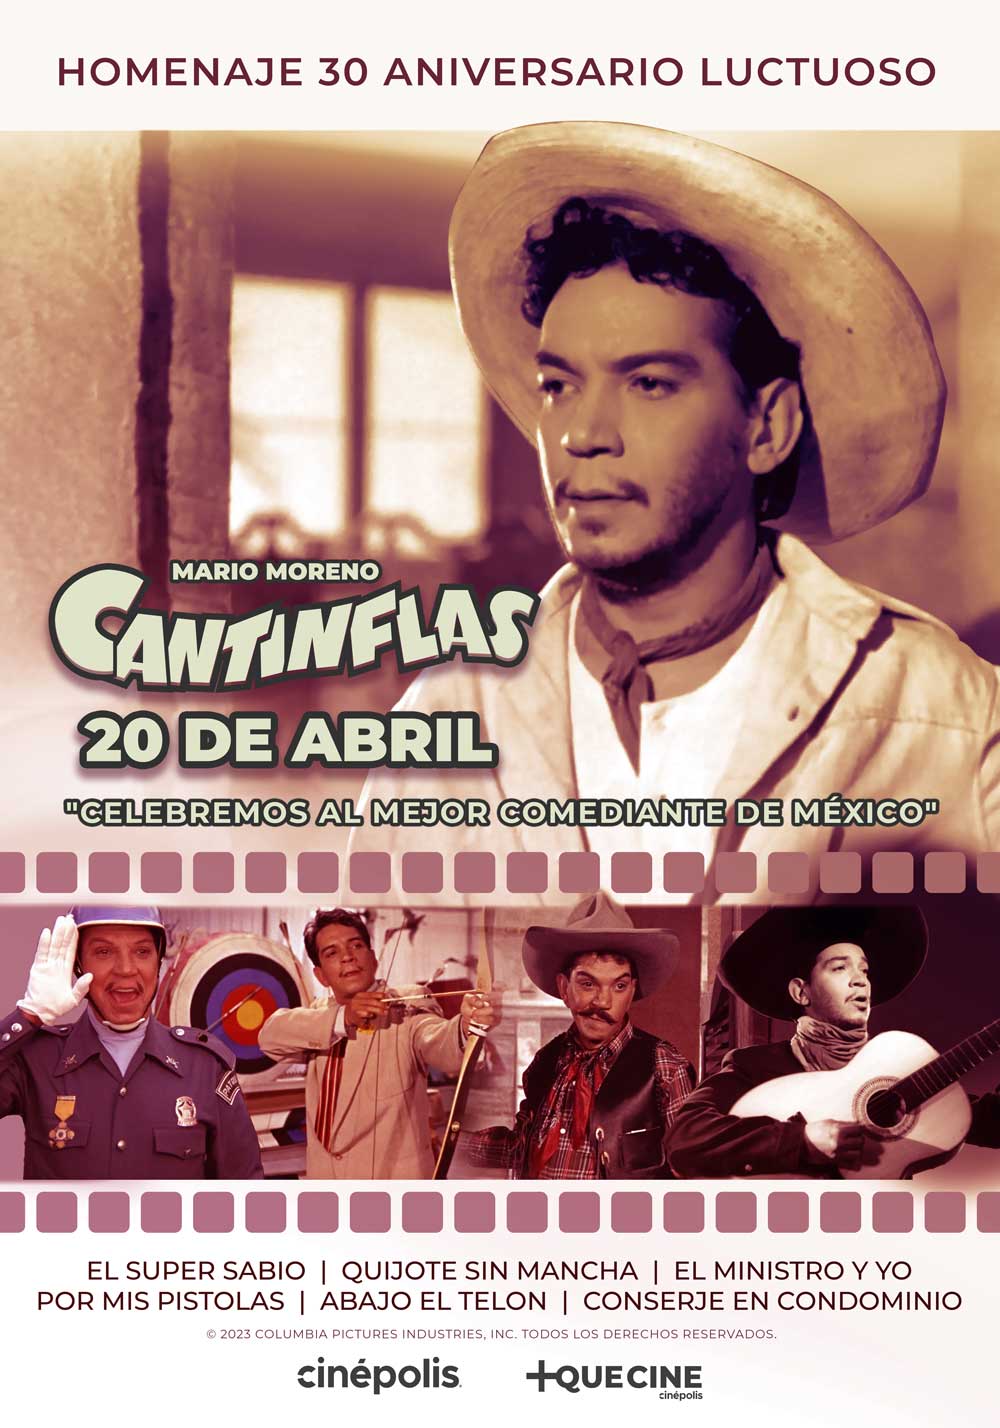 Cinépolis brinda un Homenaje a Mario Moreno "Cantinflas" 1